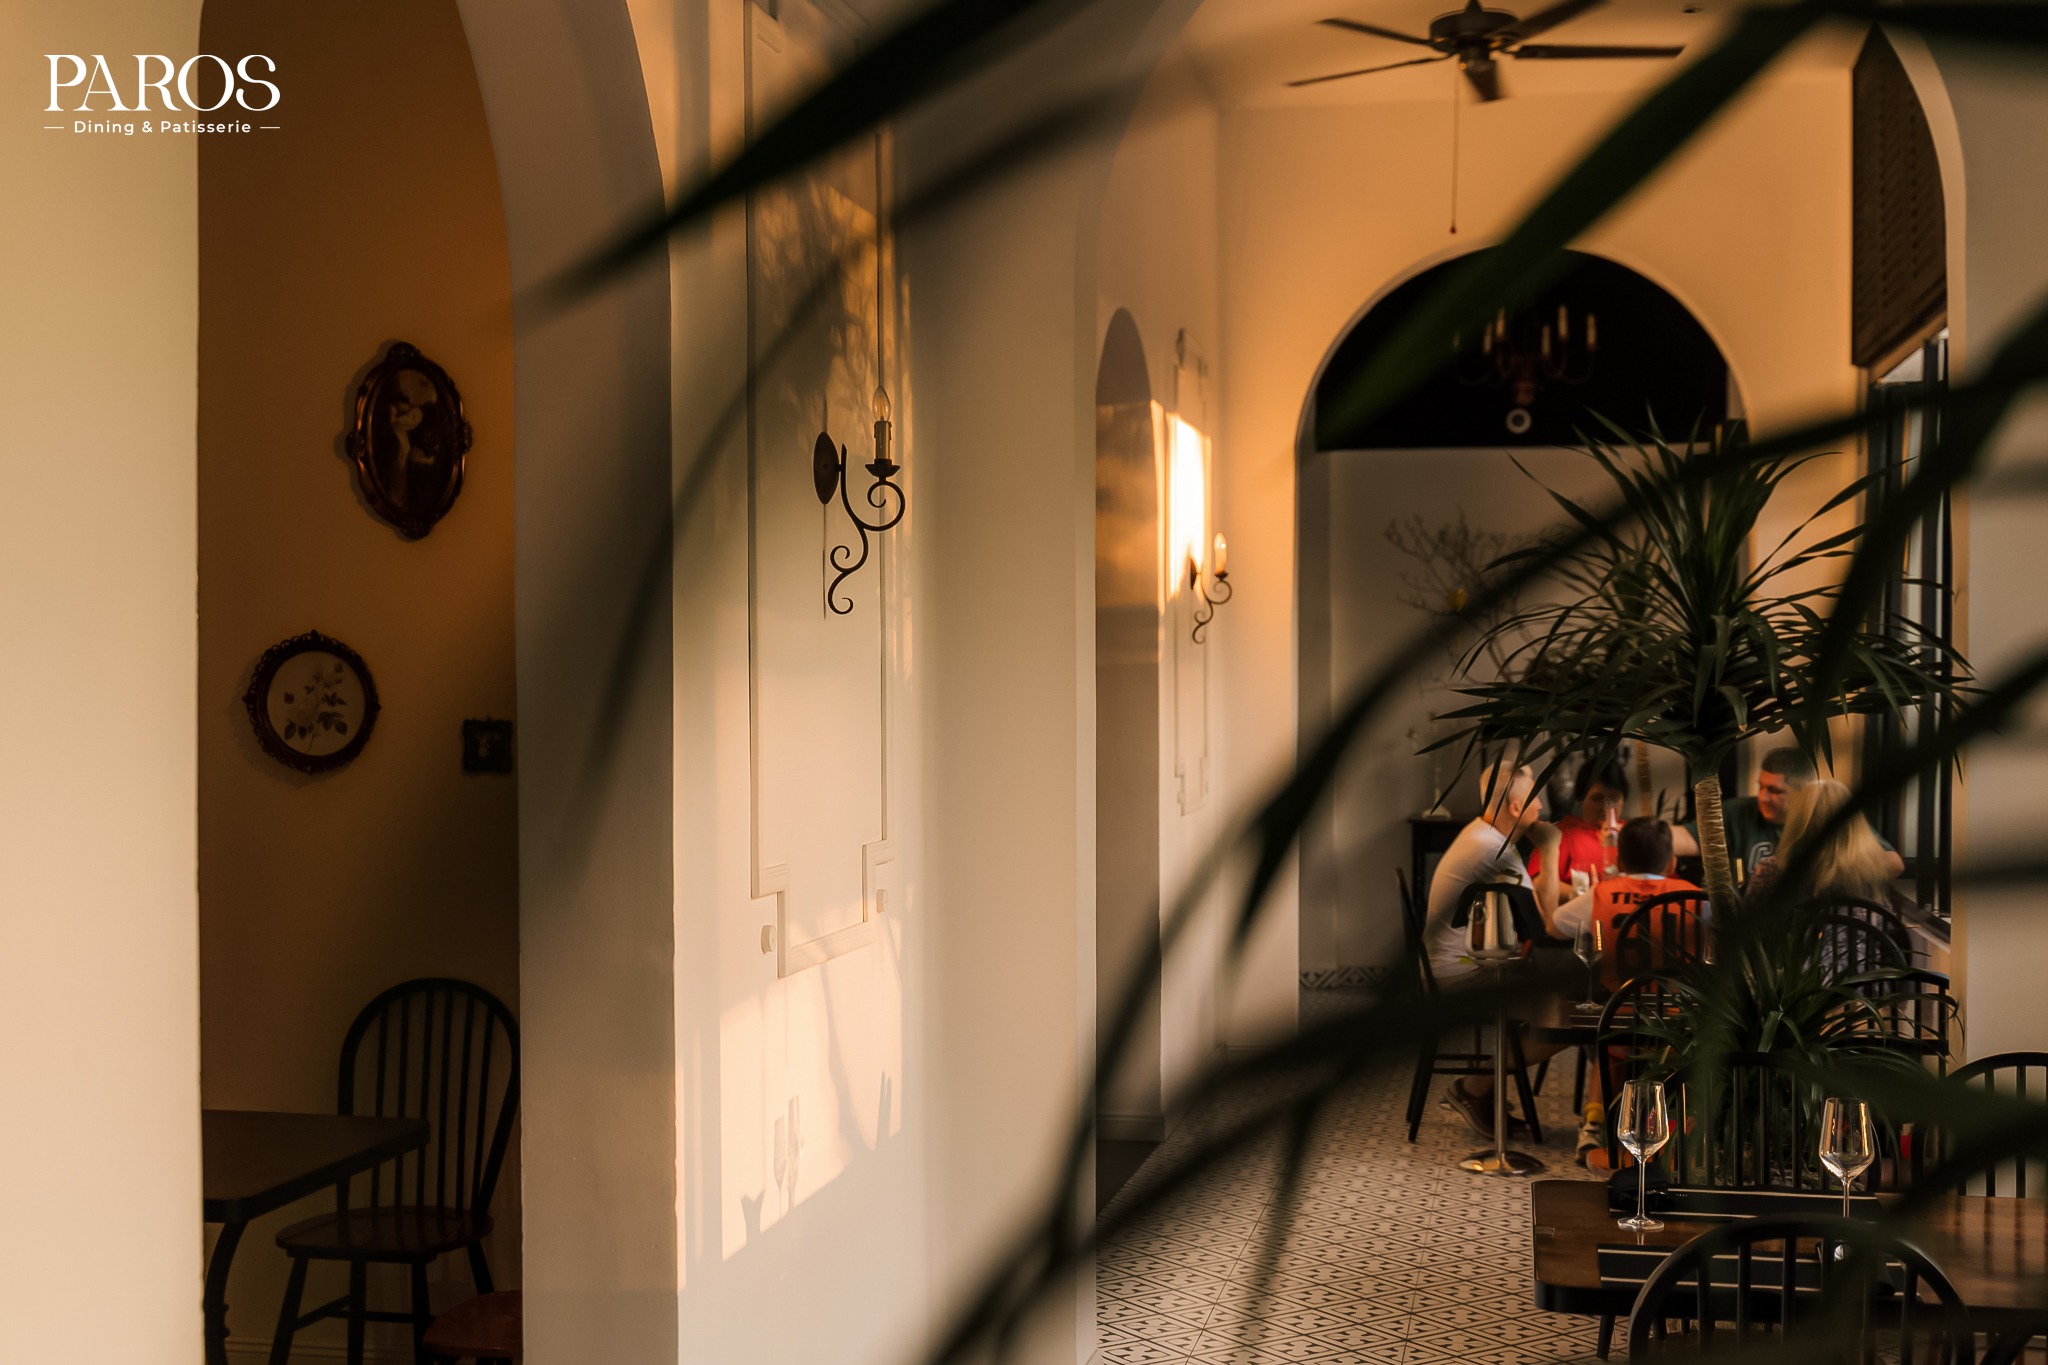 Chìm đắm trong không gian xanh mướt và vô cùng lãng mạn tại Paros - Dining & Patisserie